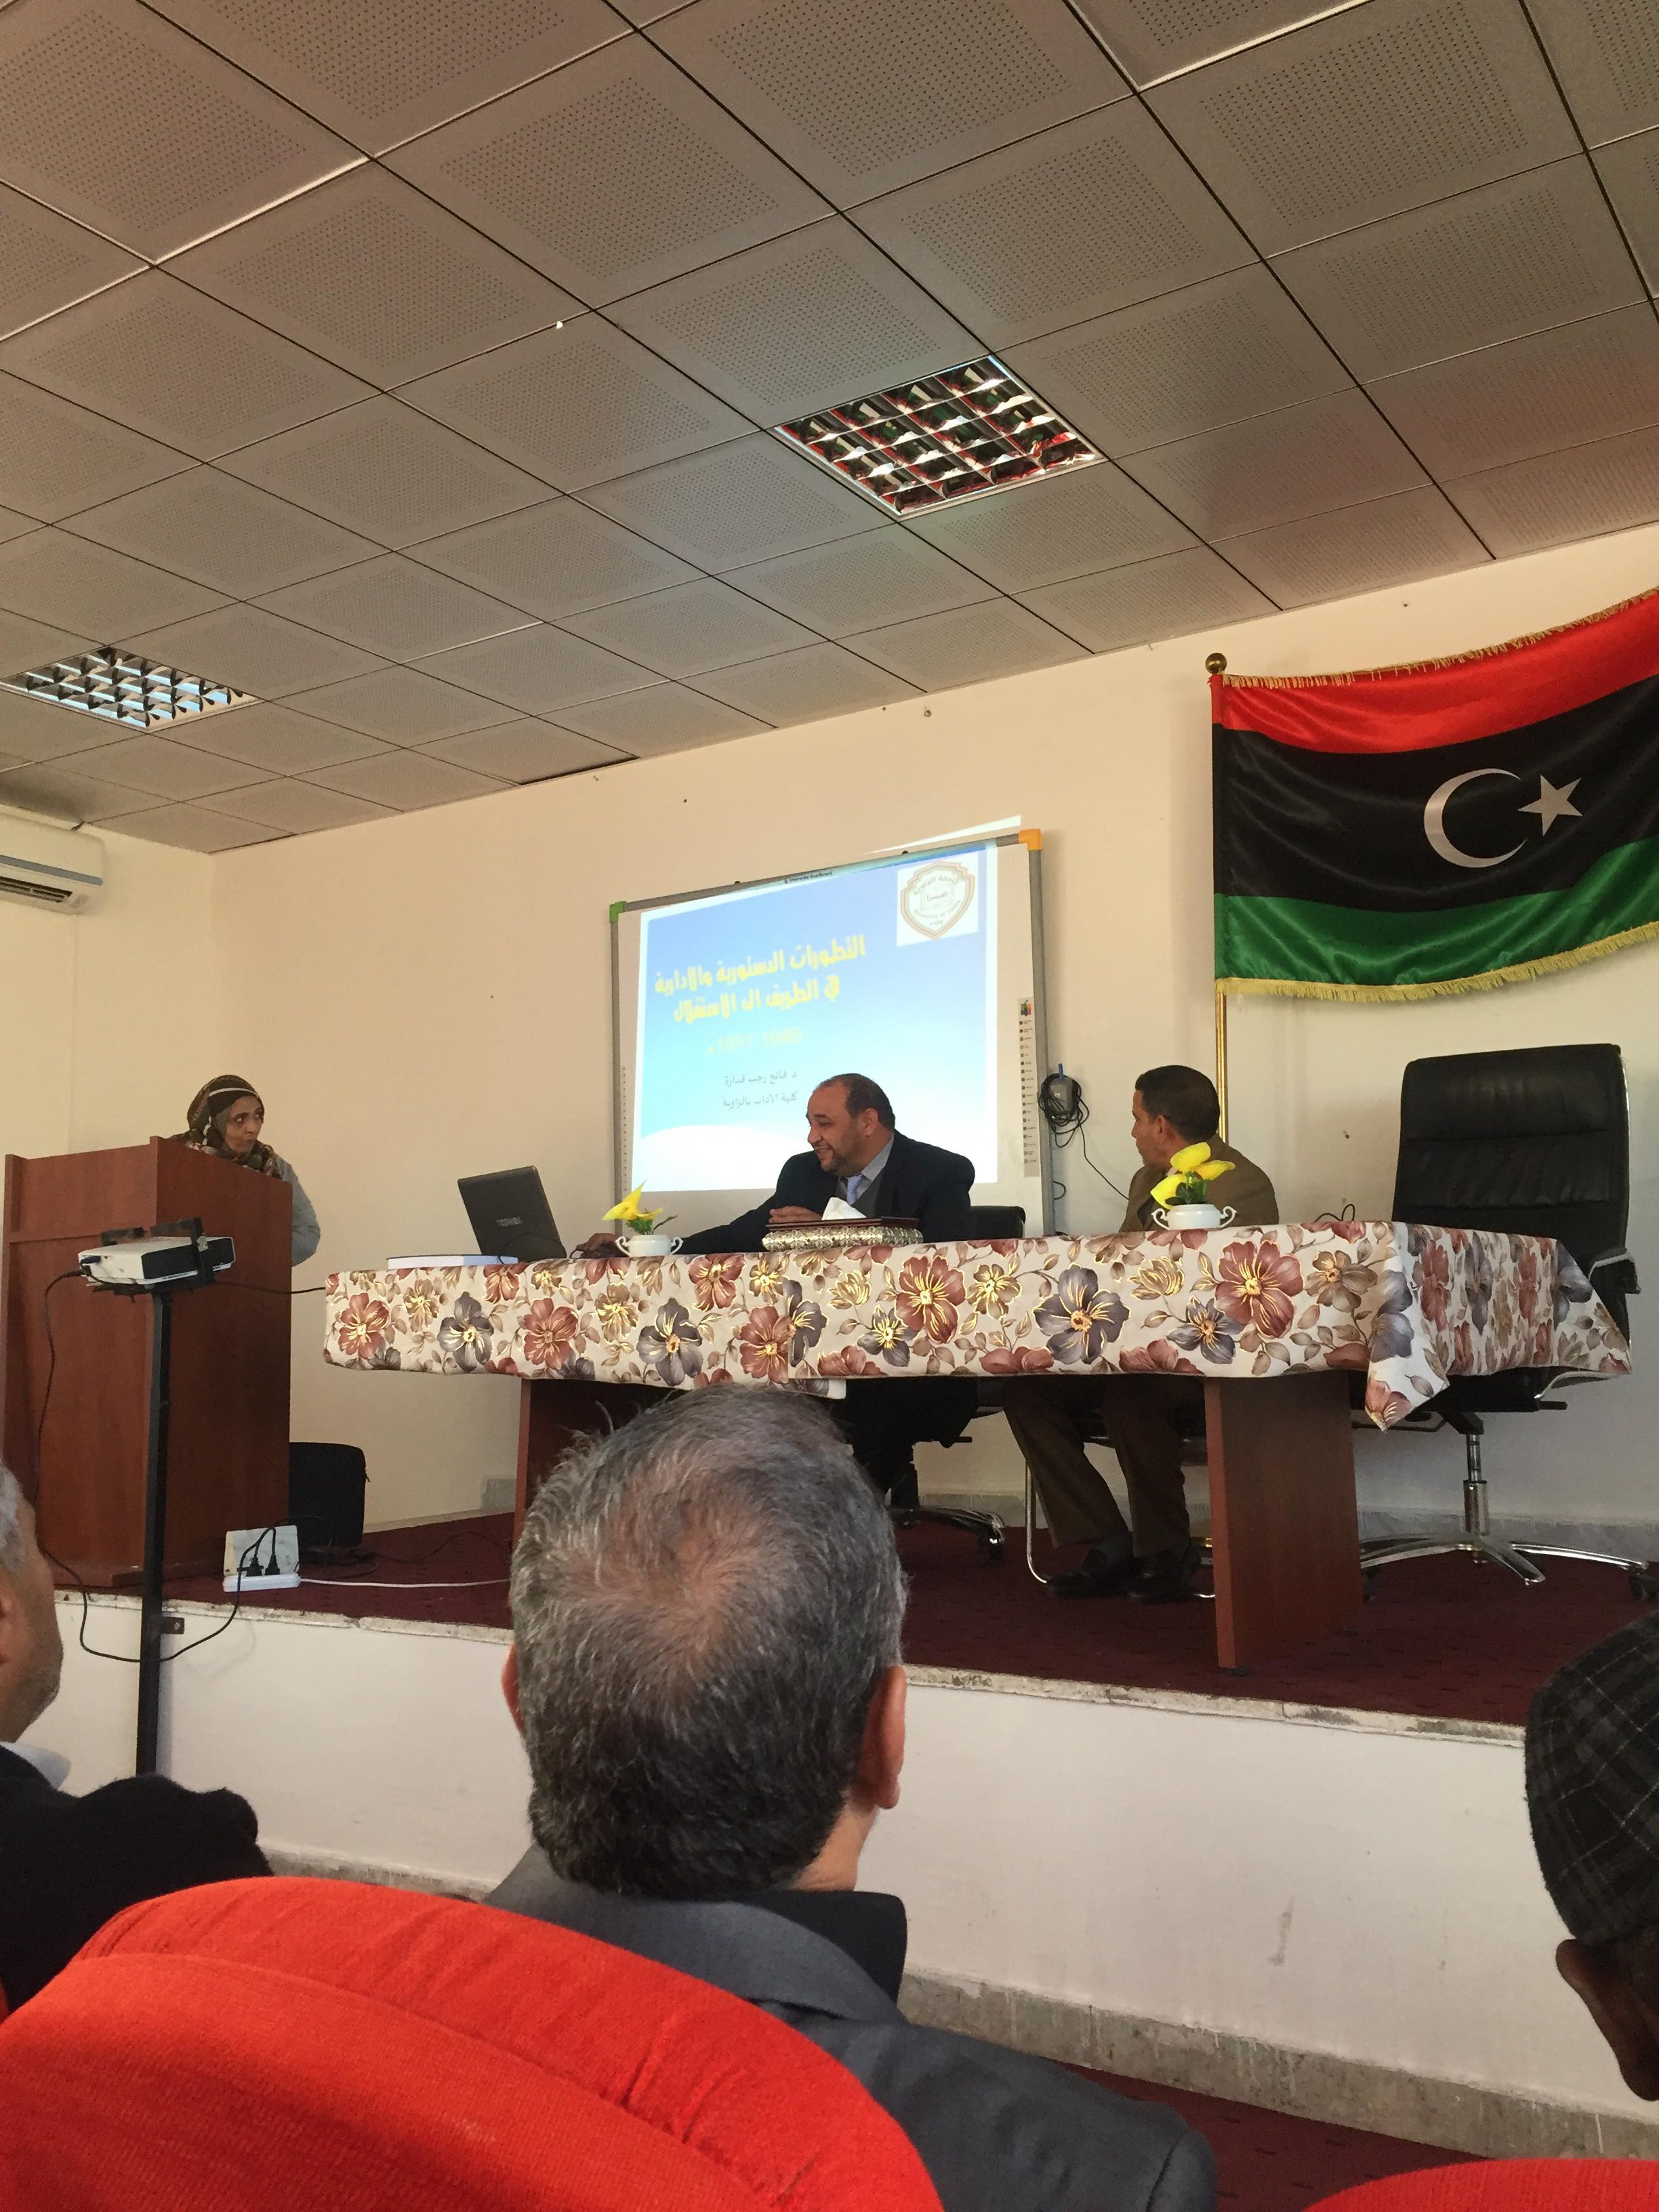 ندوة حوارية حول مفهوم الاستقلال وميلاد دولة ليبيا الحديثة بكلية التربية ابوعيسى